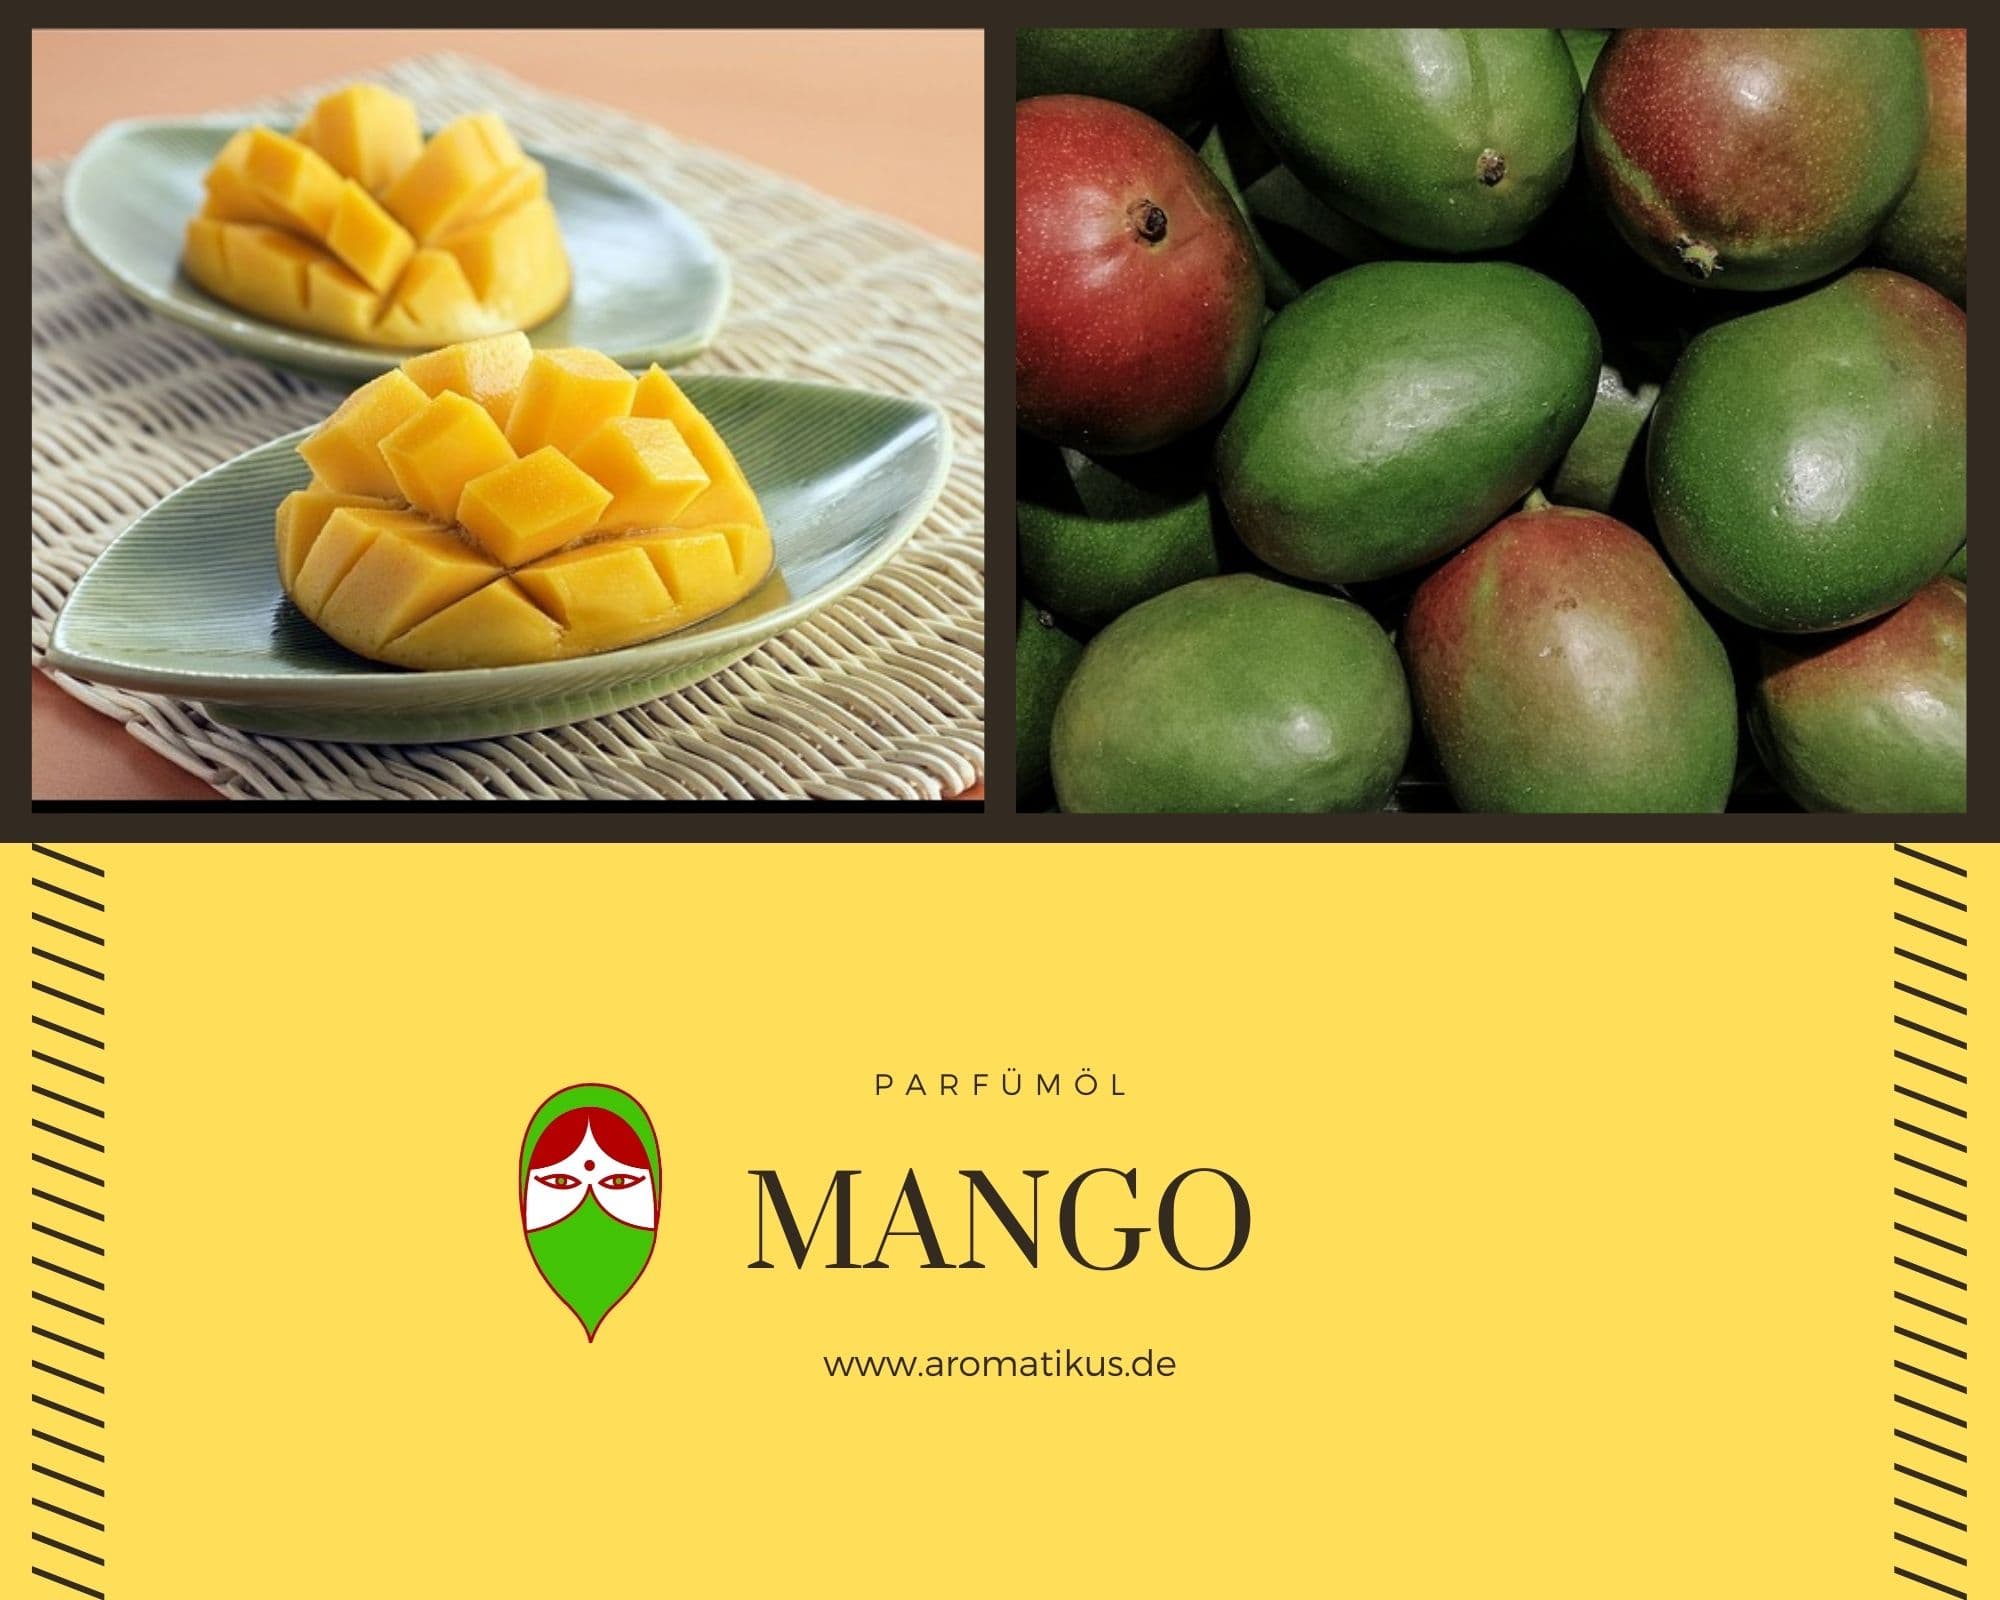 Ätherisches Duftöl Mango als Parfümöl von Aromatikus